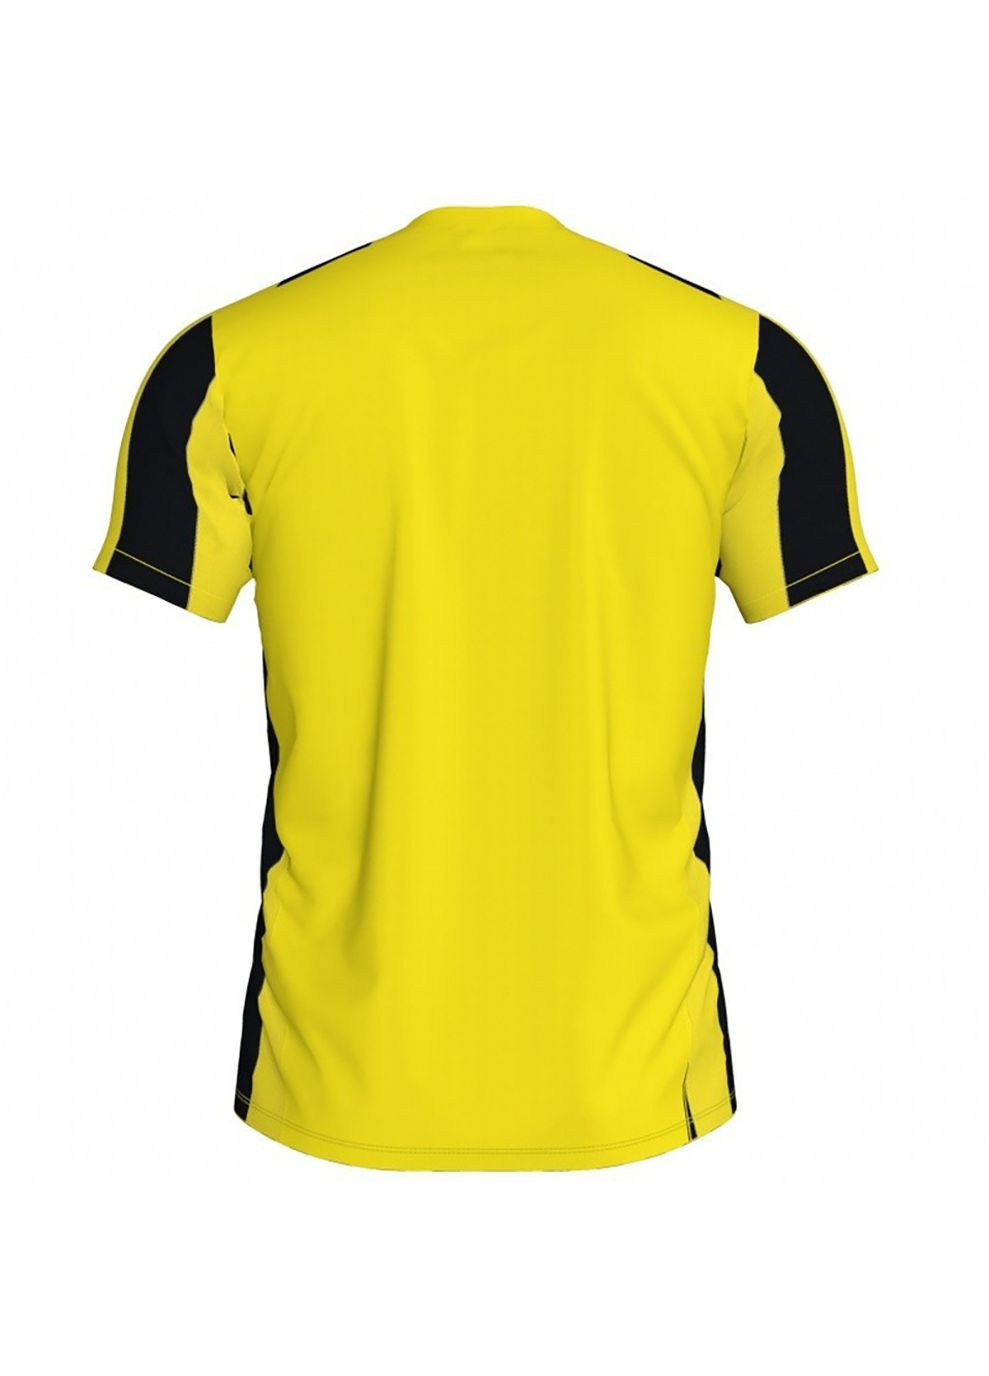 Комбинированная футболка inter t-shirt s/s желтый,черный 101287.901 Joma